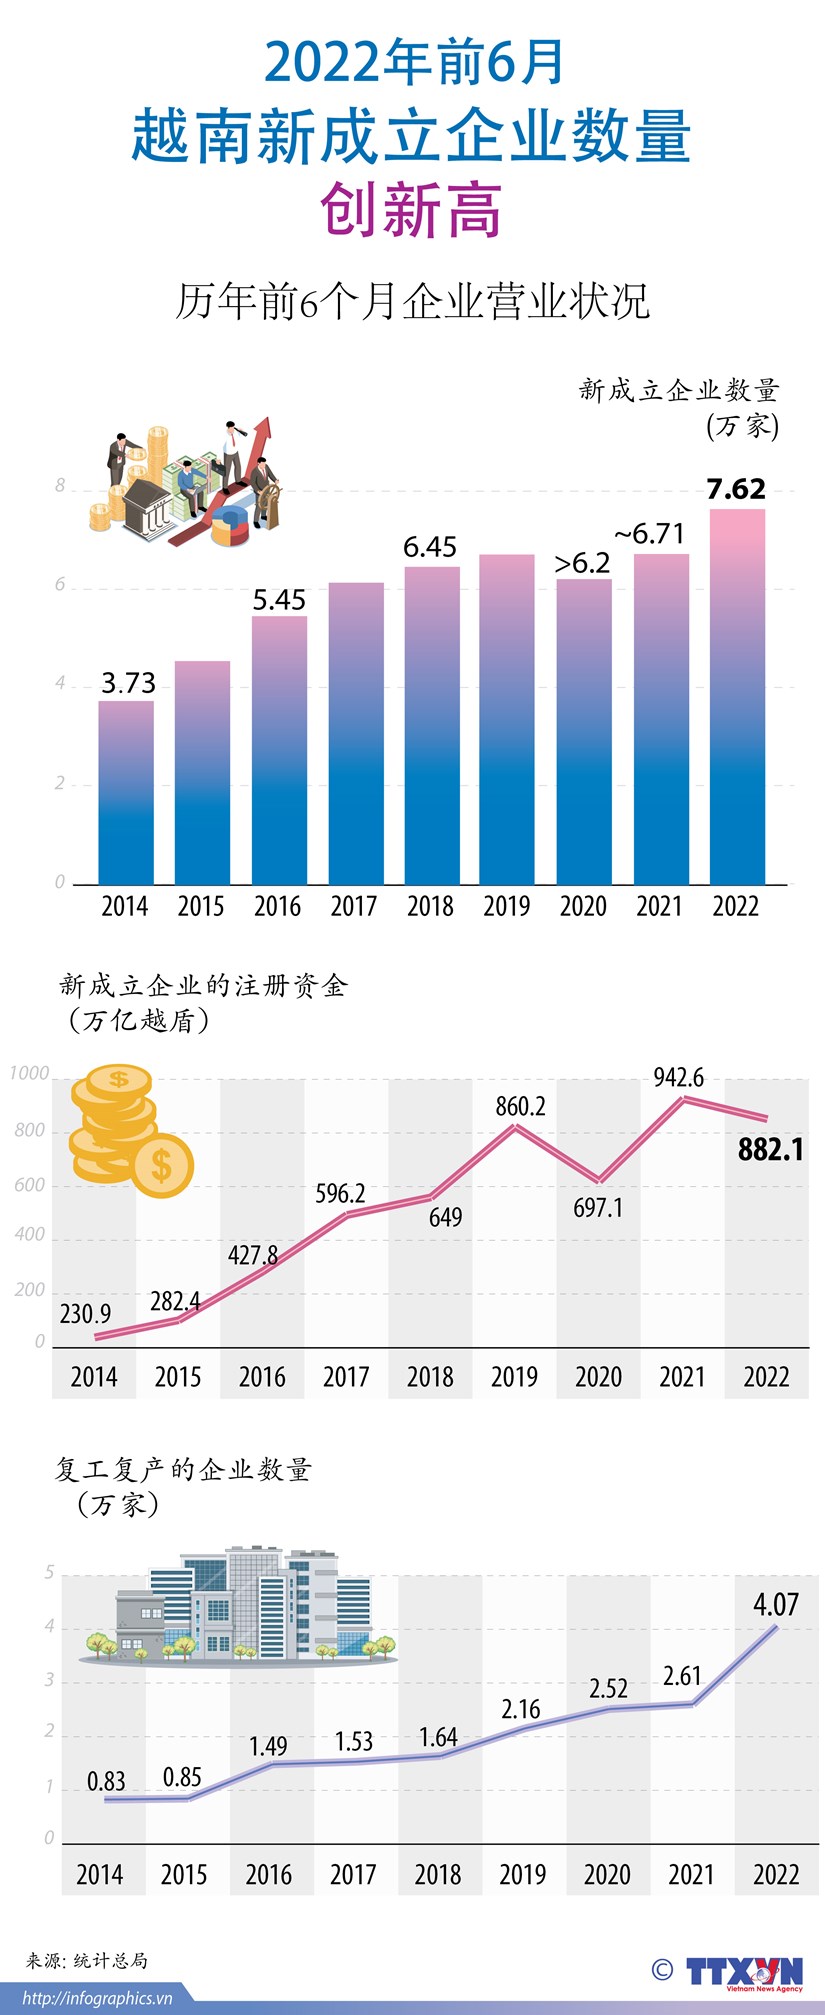 图表新闻：2022年前6月越南新成立企业数量创新高 hinh anh 1